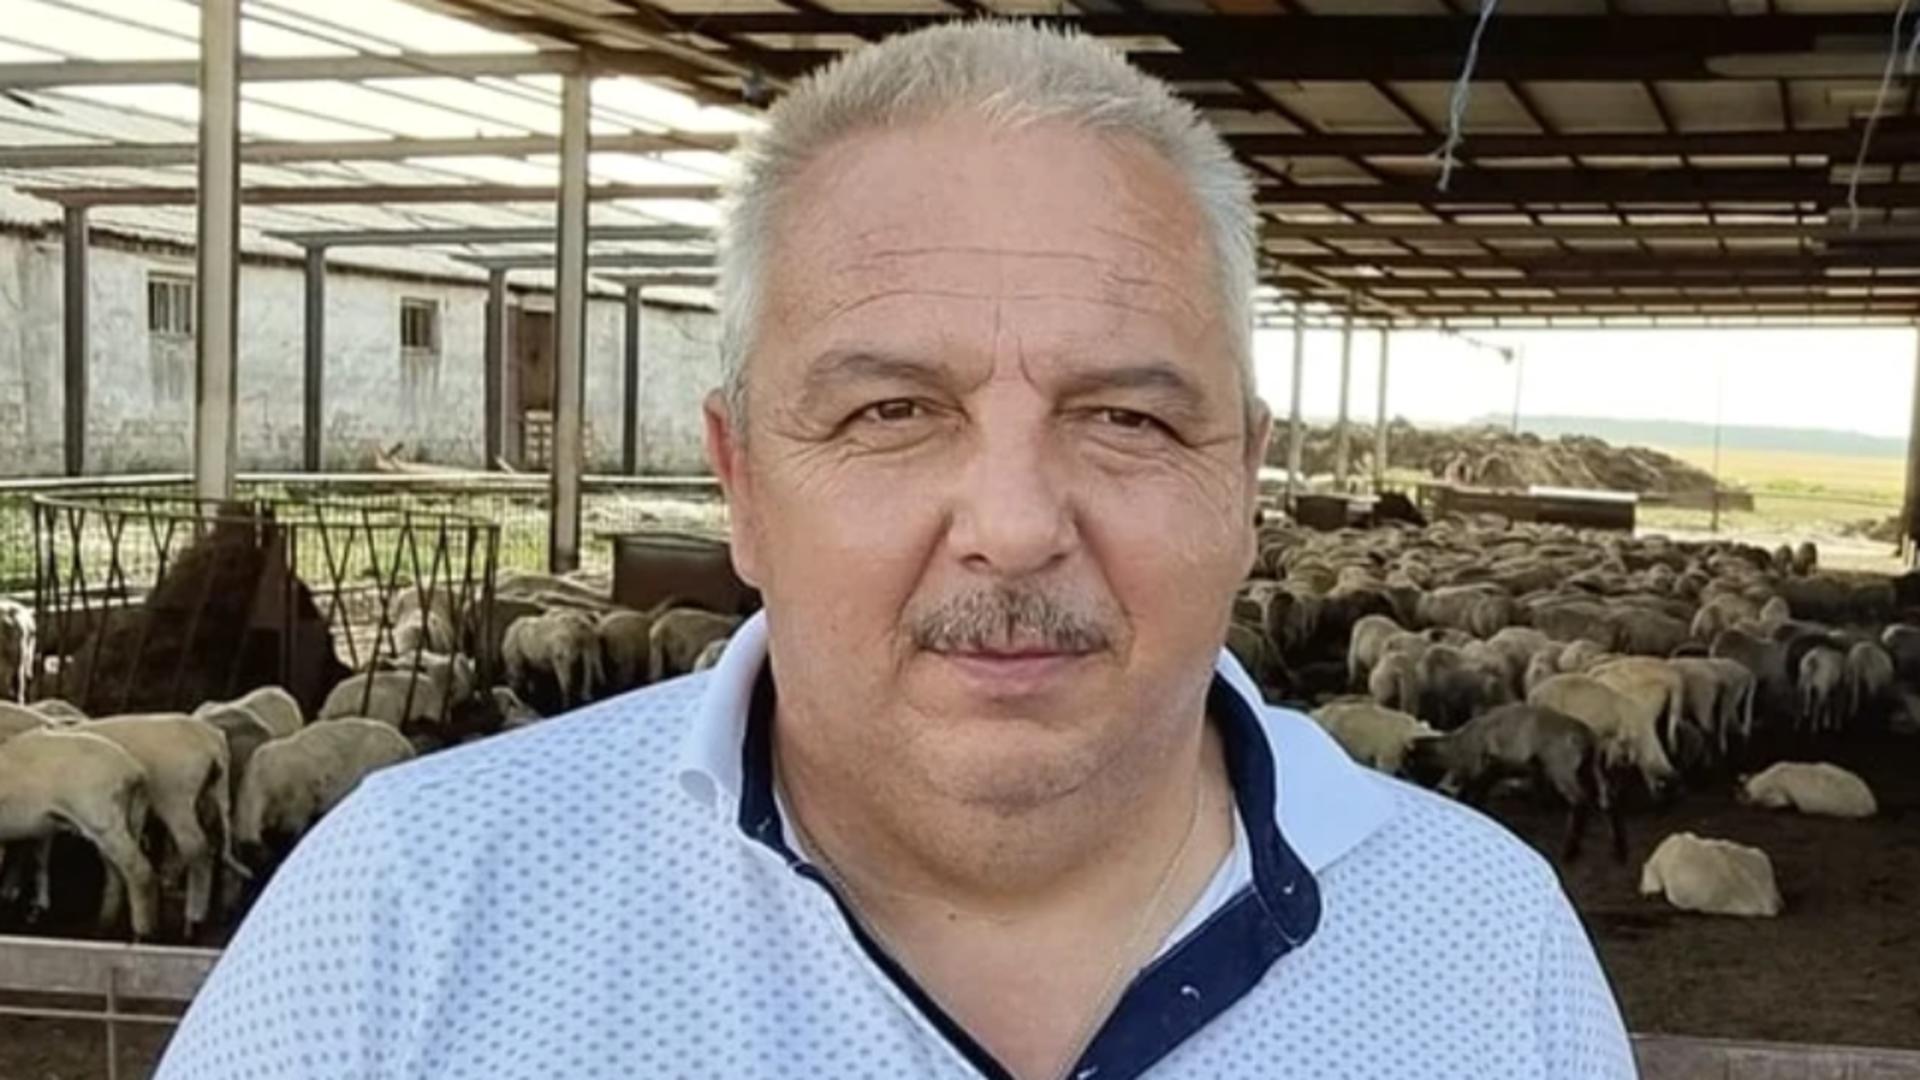 A murit cel mai cunoscut oier din România. Pusese bazele unui cunoscut brand de lactate